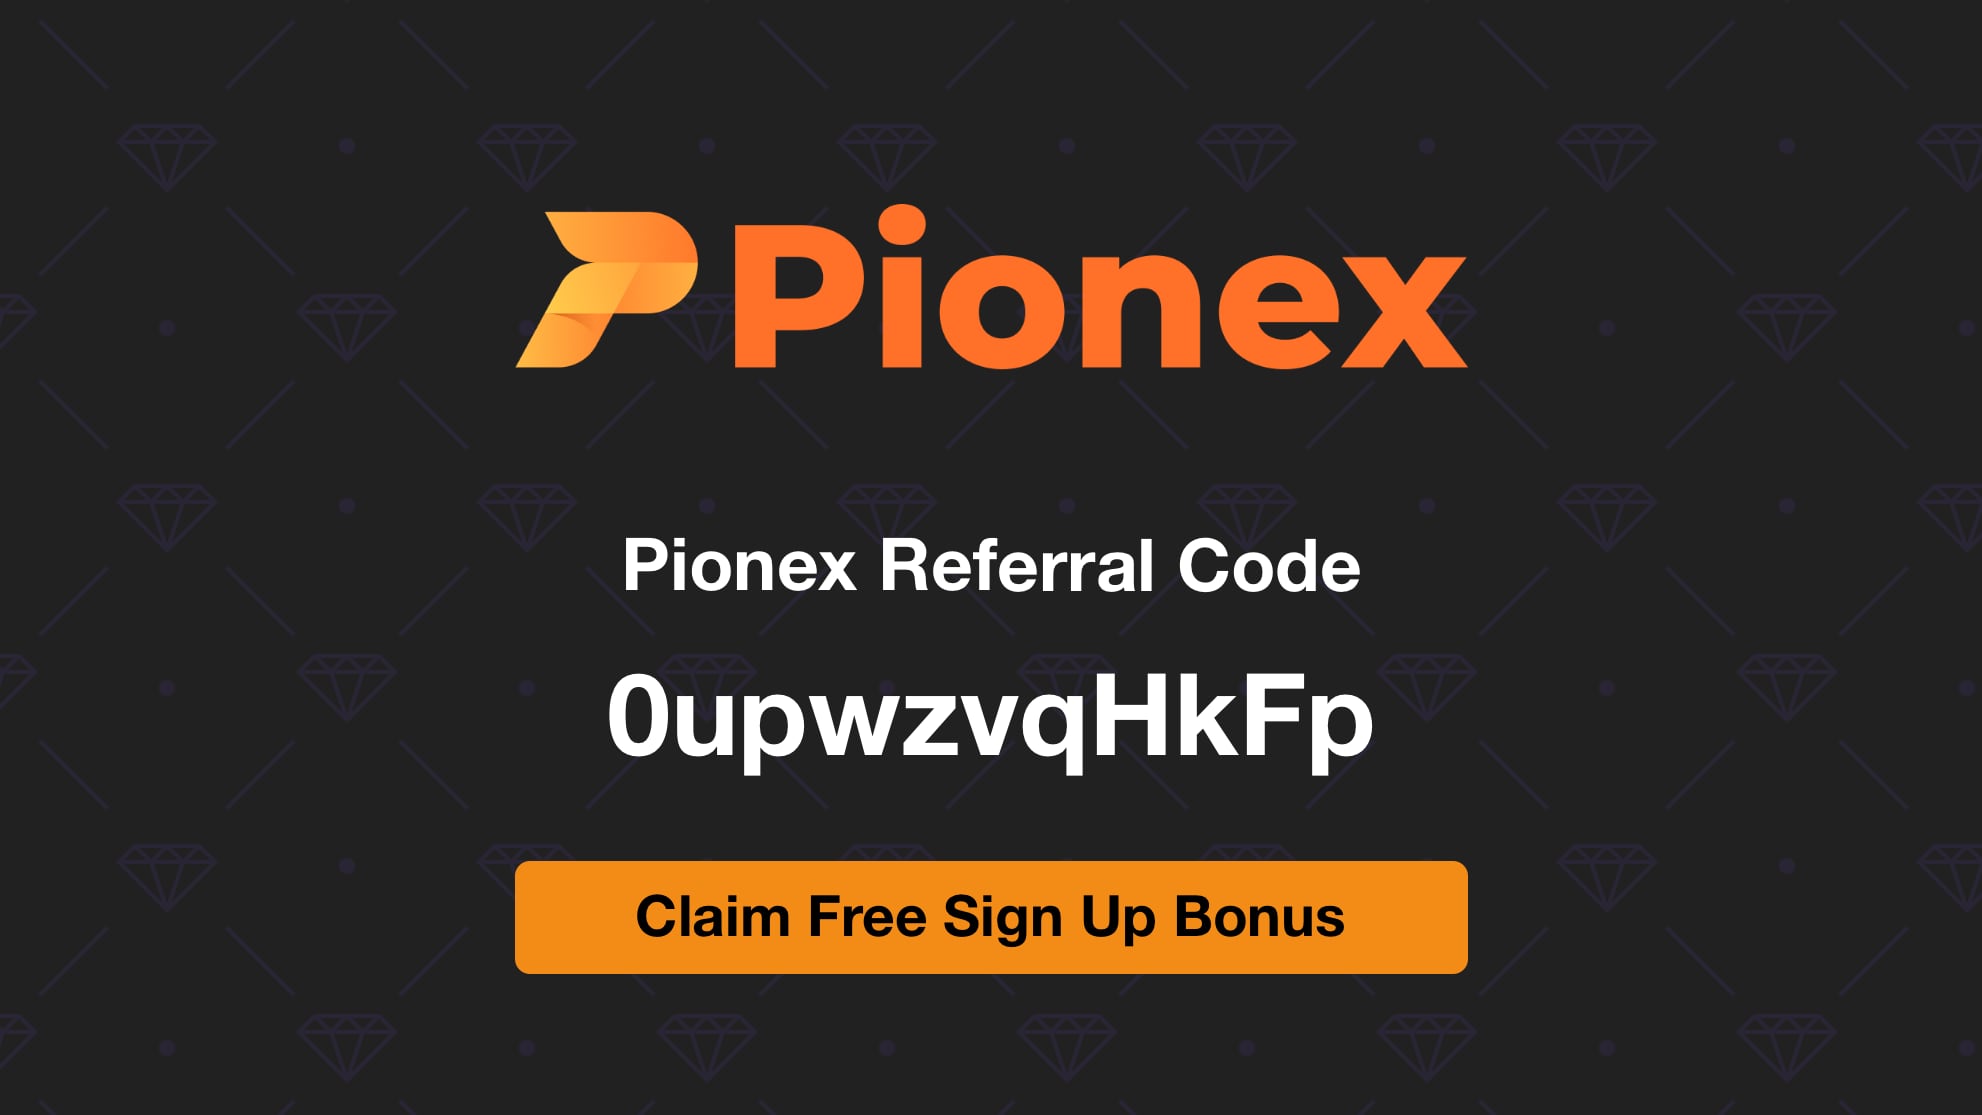 Pionex  Referral Code 0upwzvqHkFp